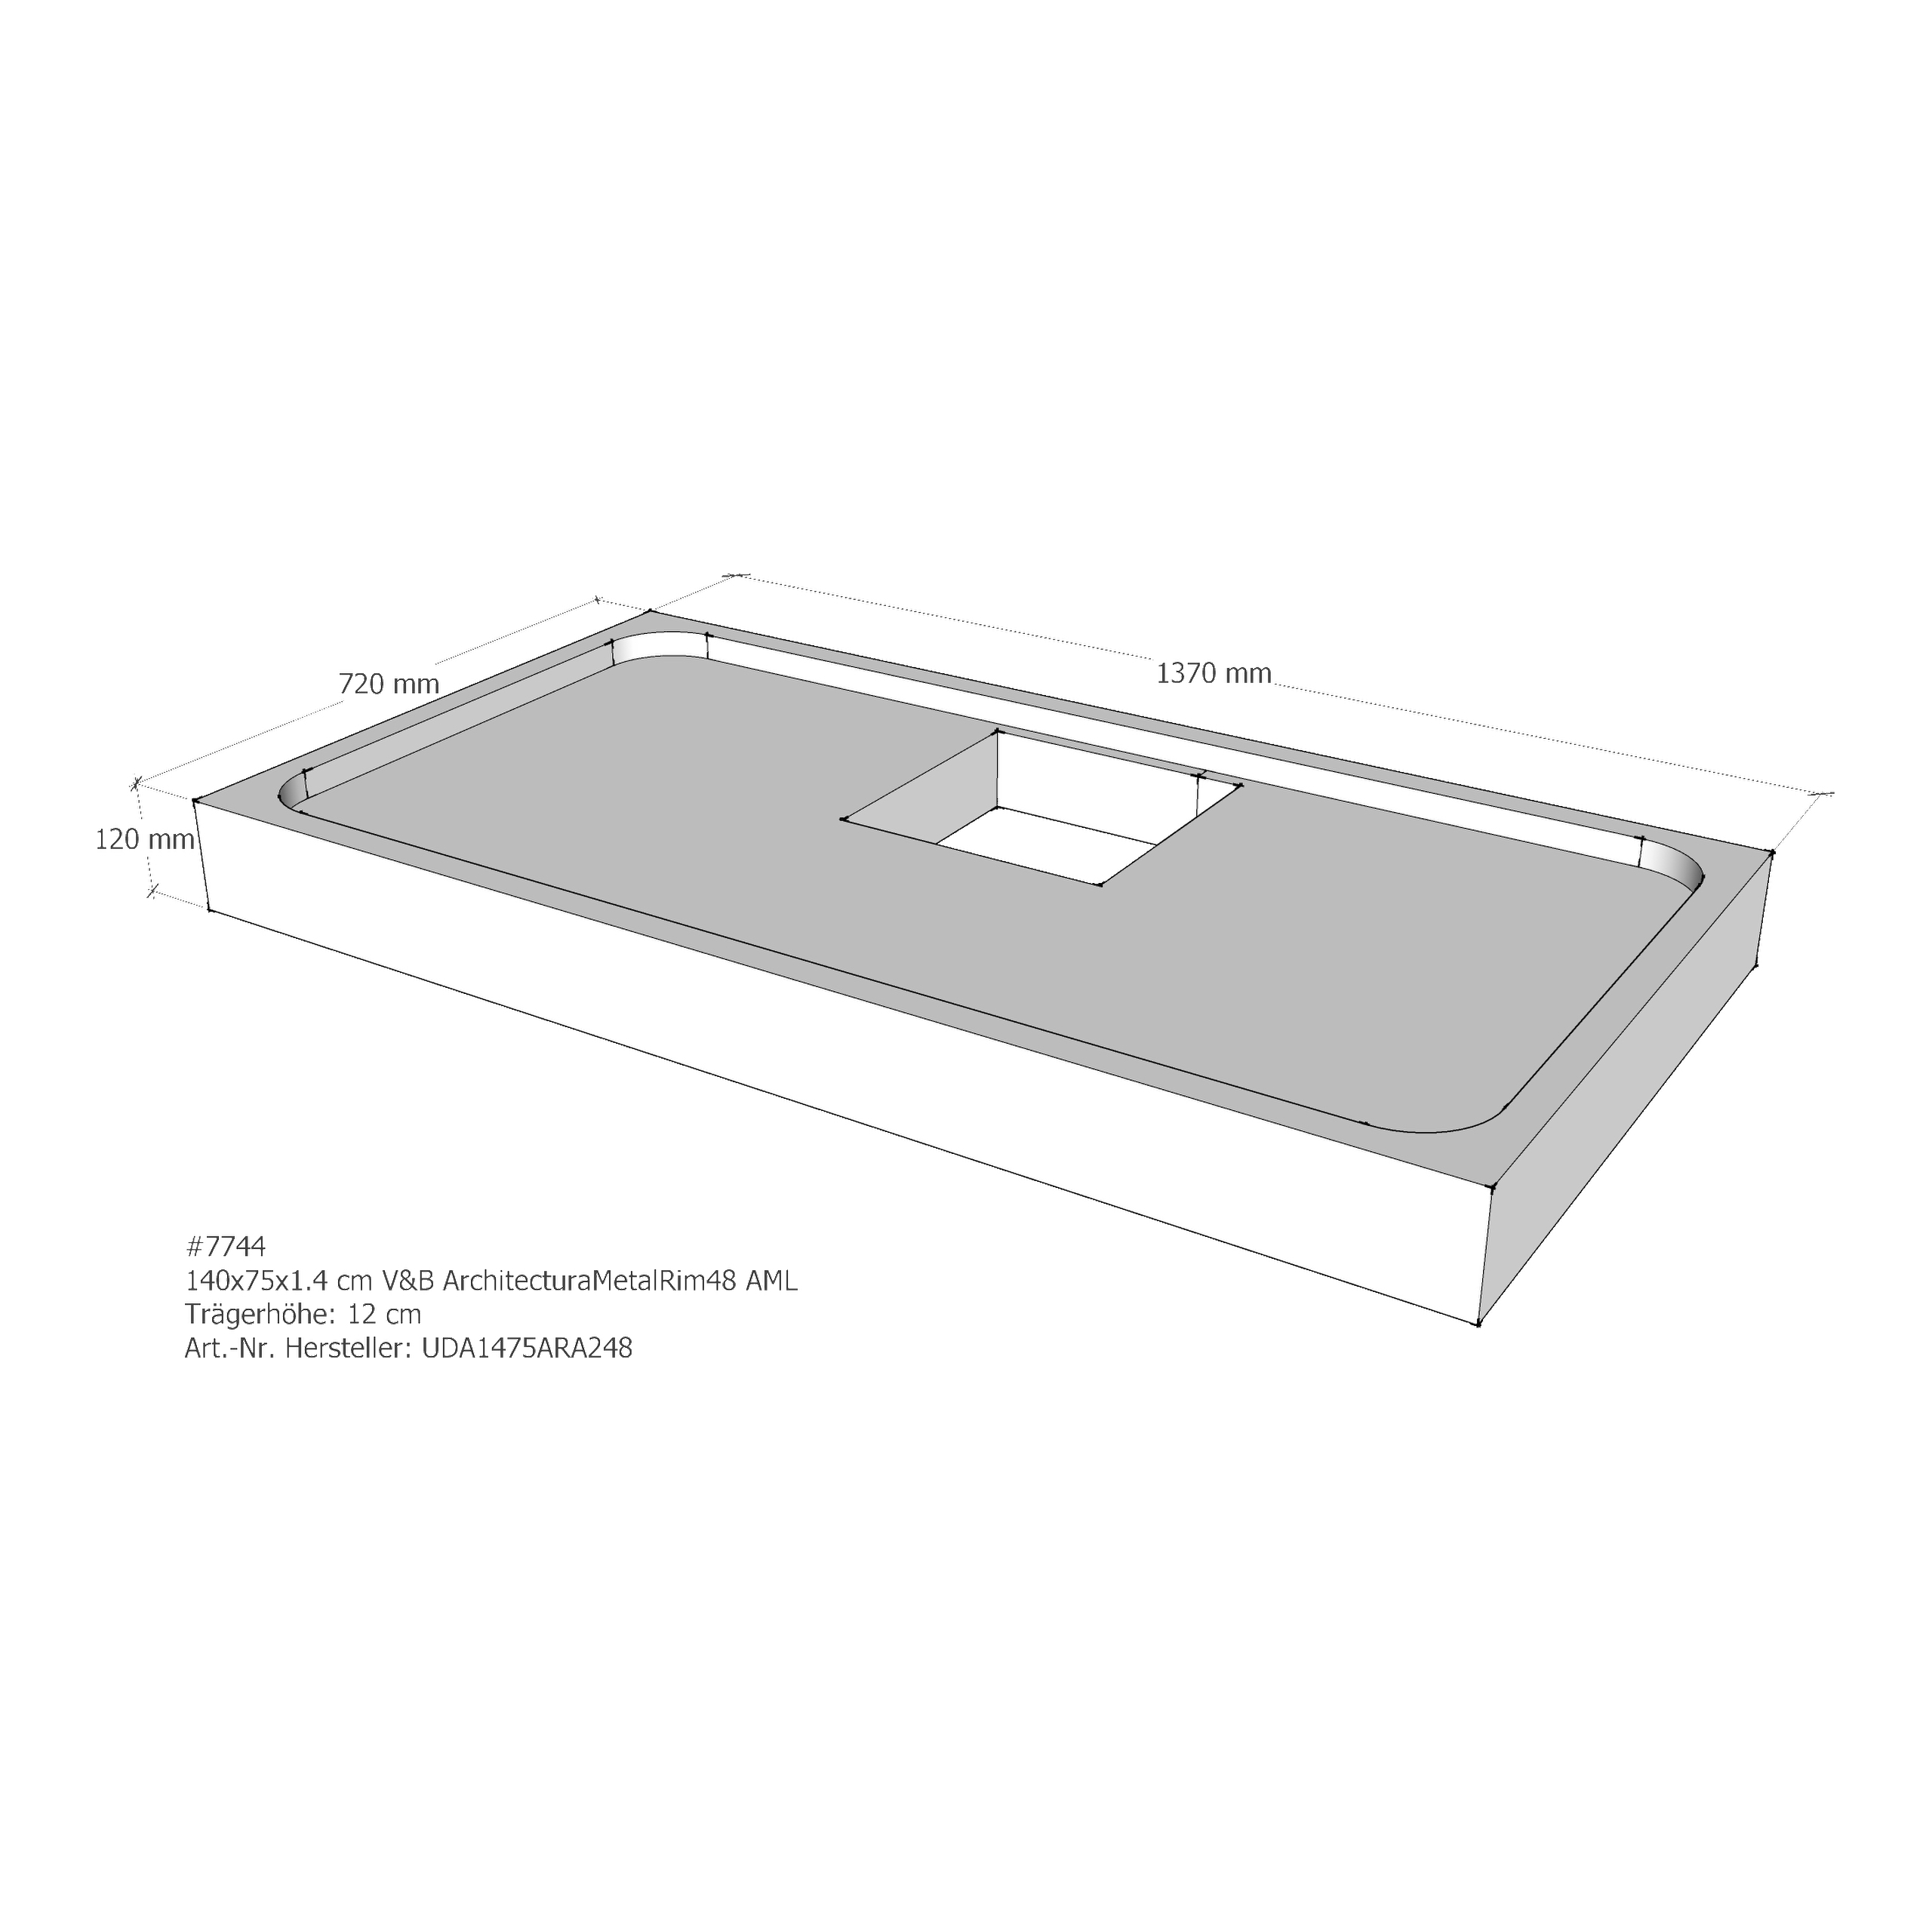 Duschwannenträger für Villeroy & Boch Architectura MetalRim 140 × 75 × 1,4 cm